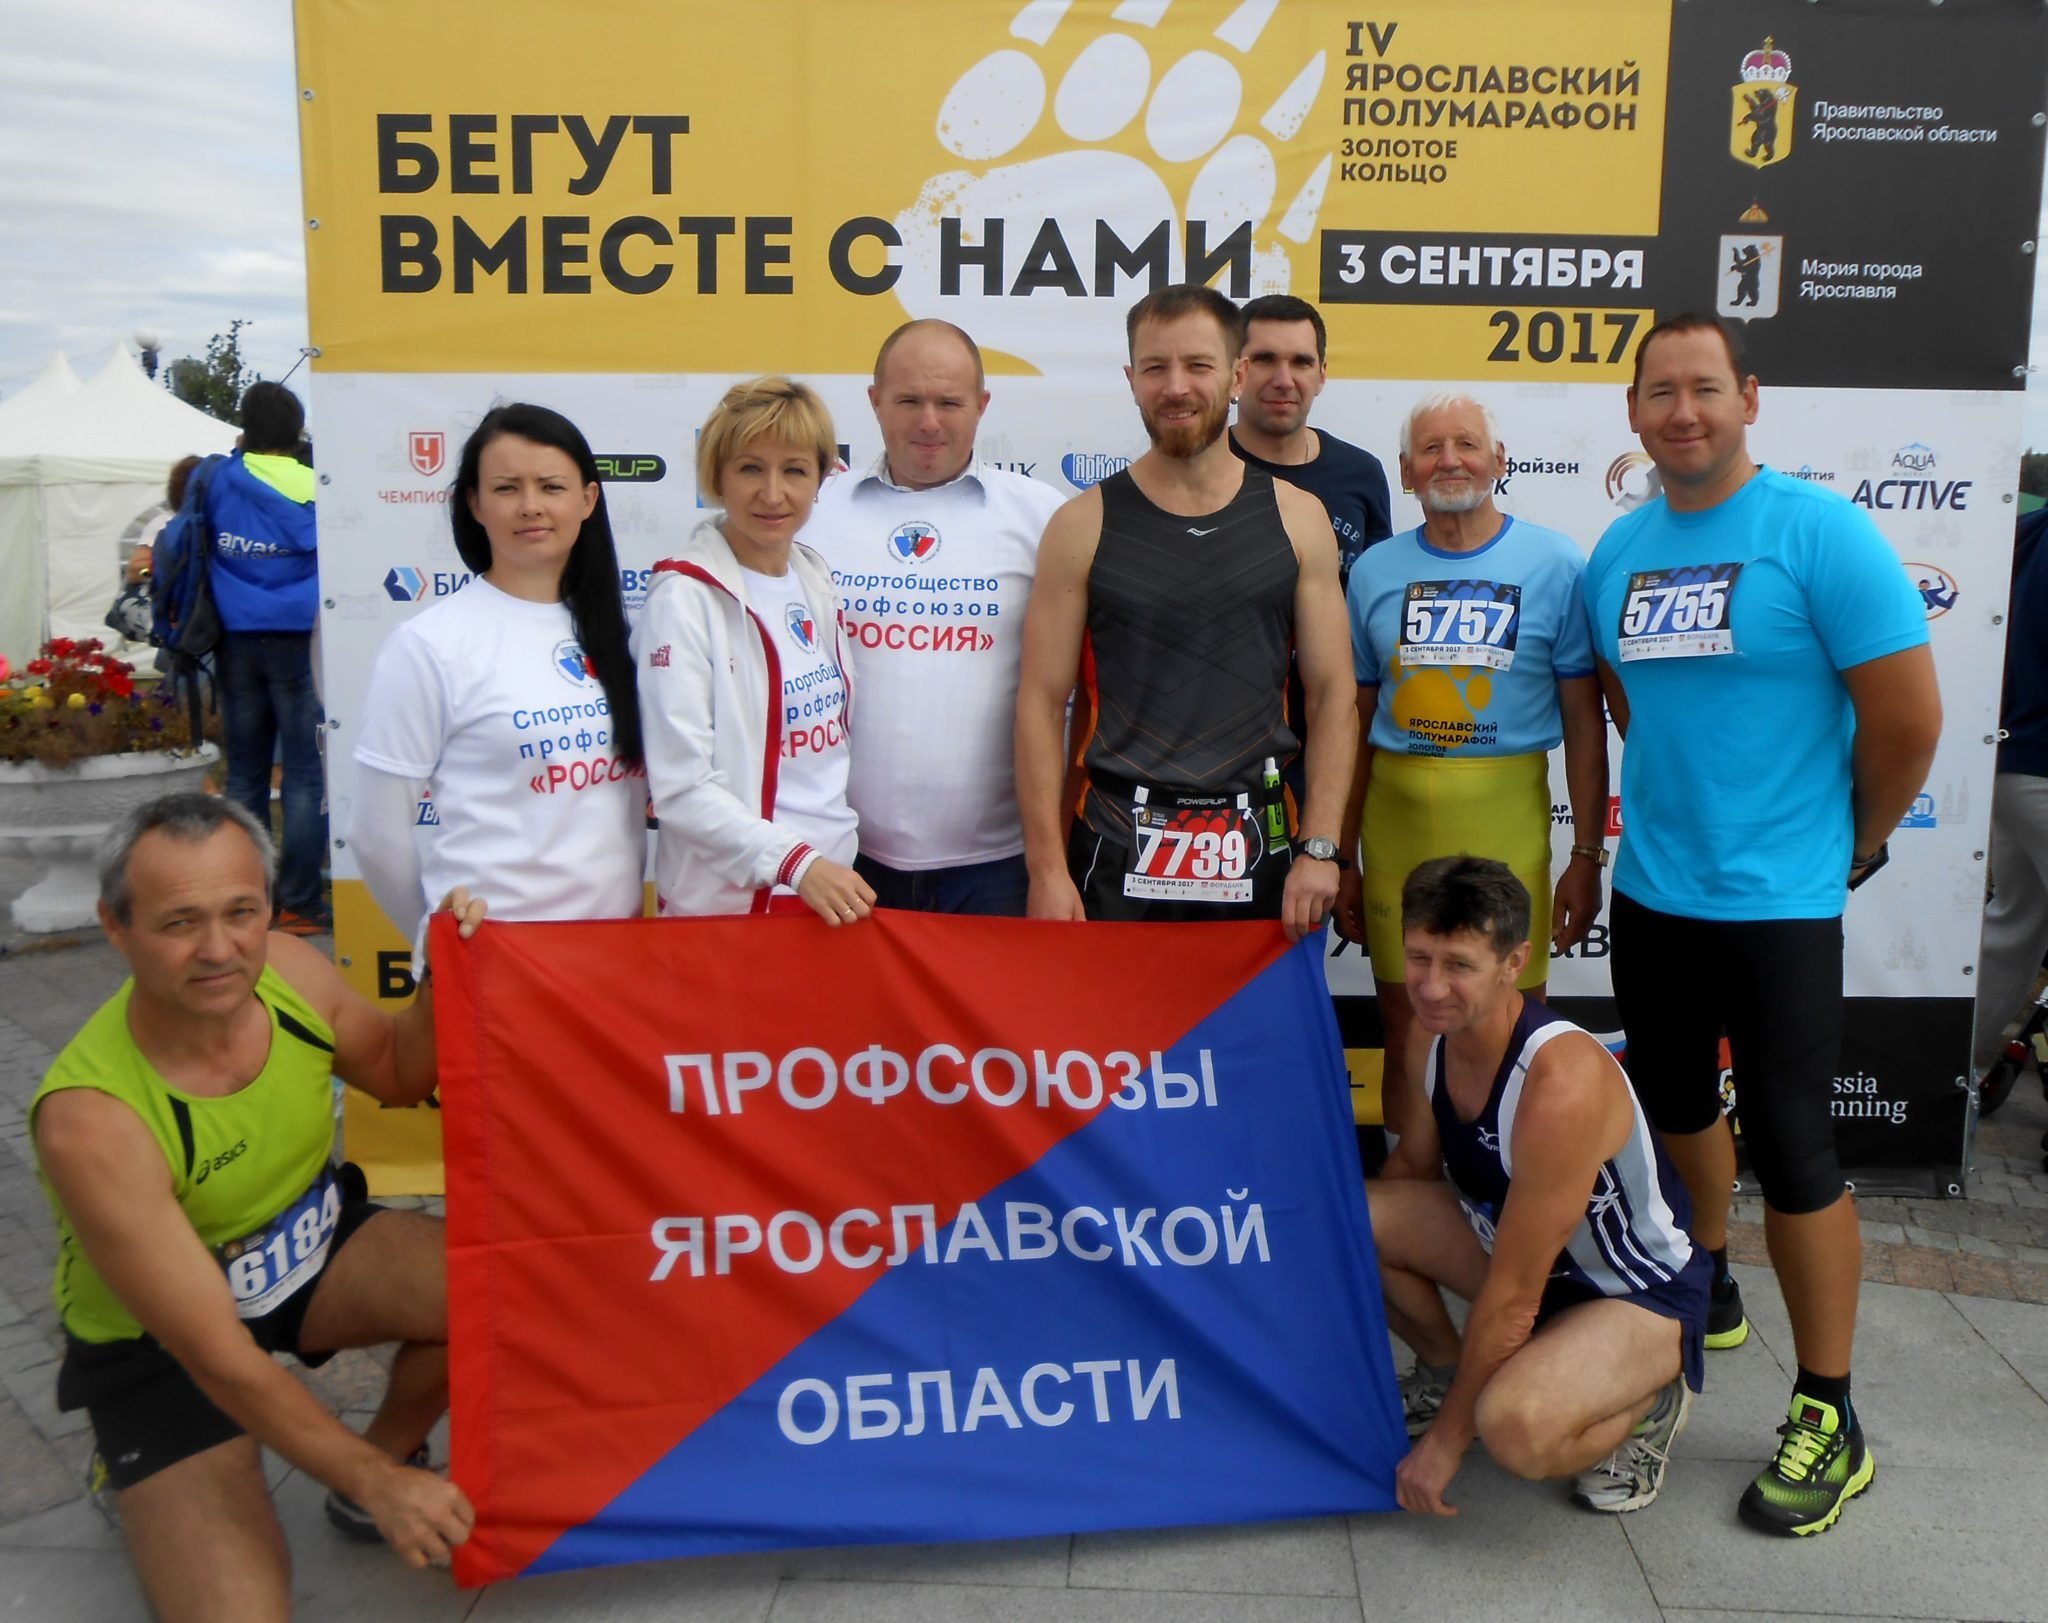 Члены спортобщества профсоюзов приняли участие в марафоне